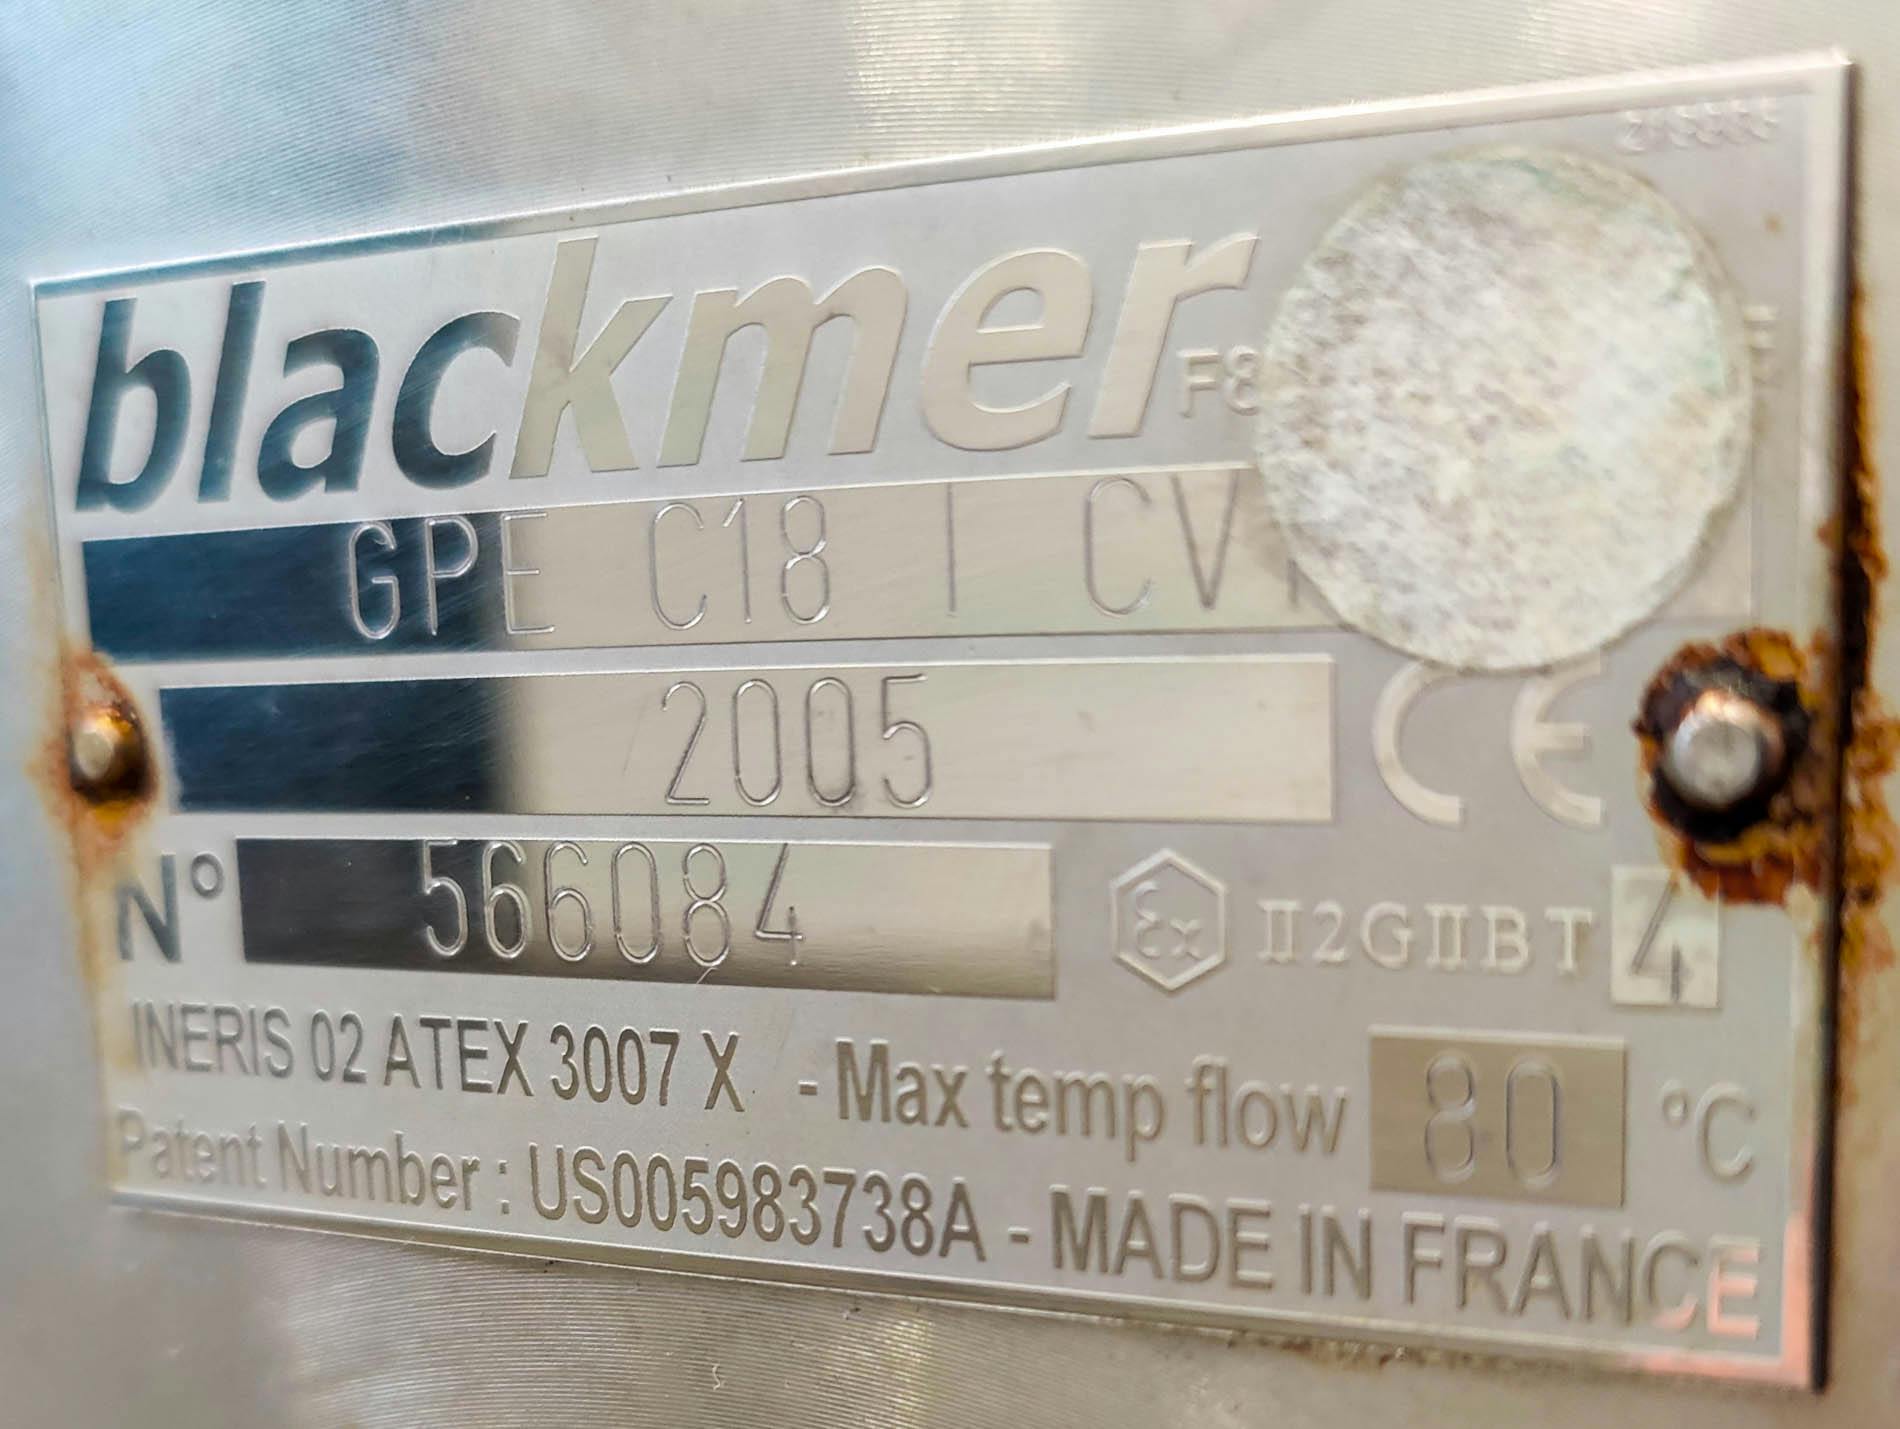 Blackmer GPI C18 I CV - Exzenterschneckenpumpe - image 11